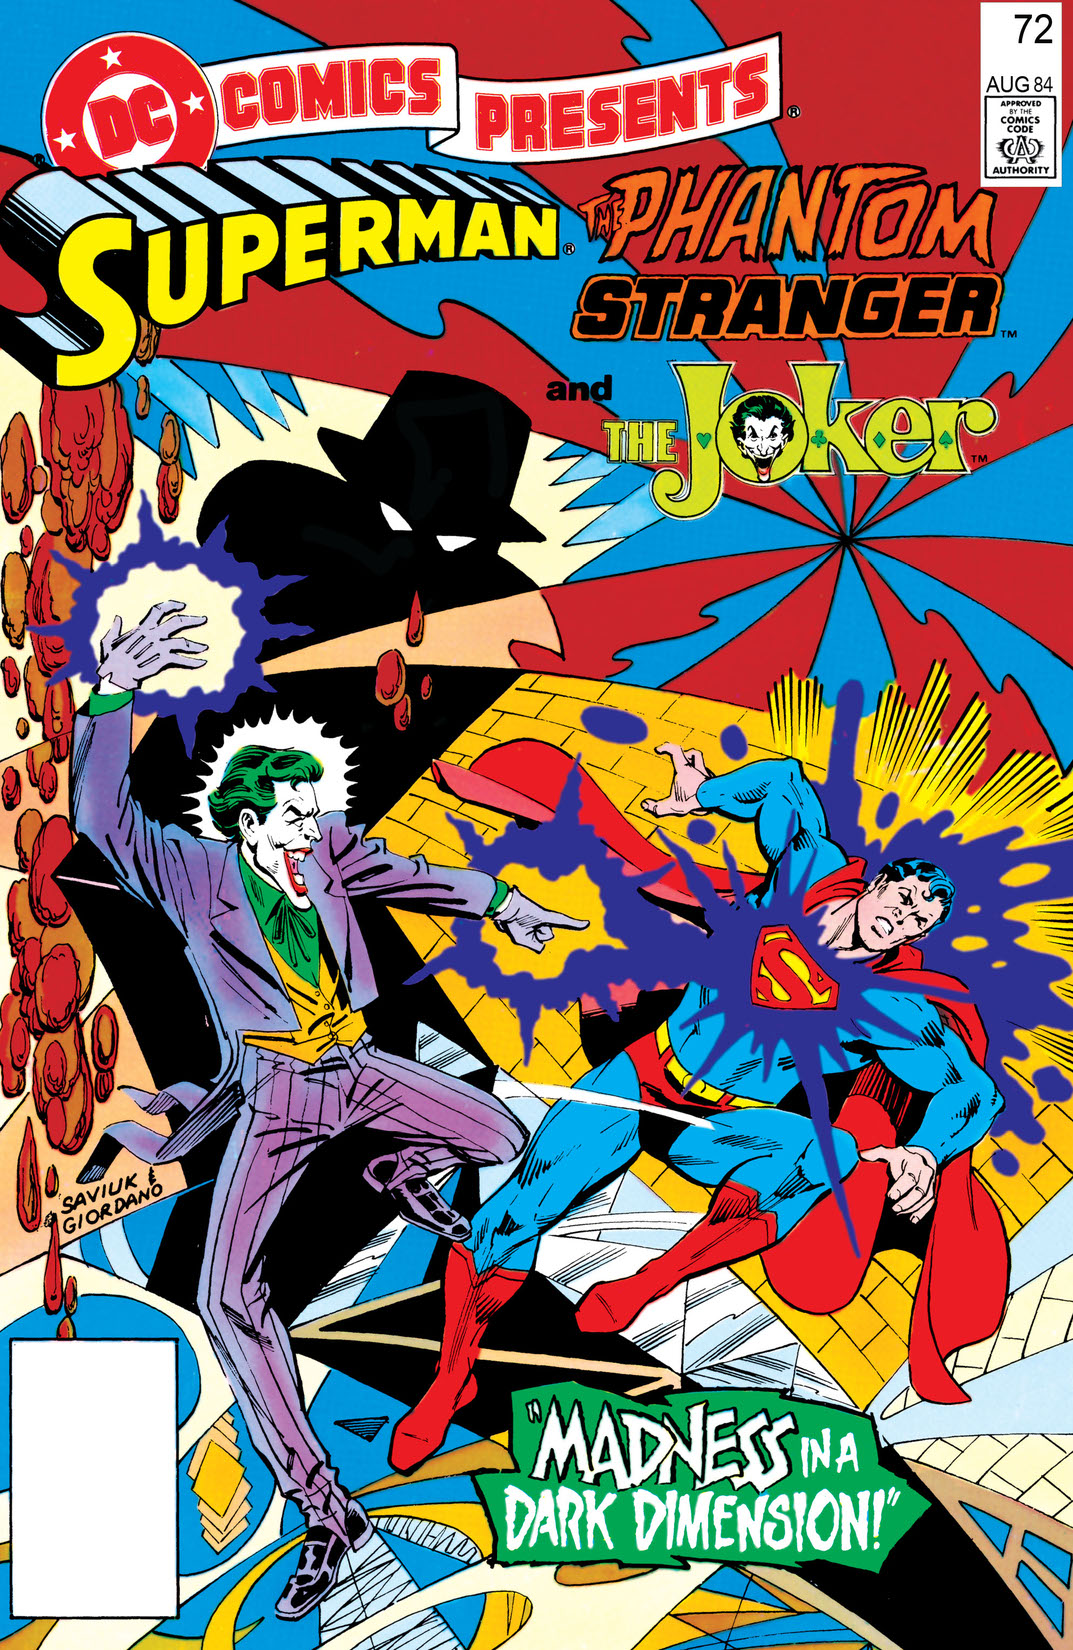 DC Comics Presents (1978-1986) #72 preview images